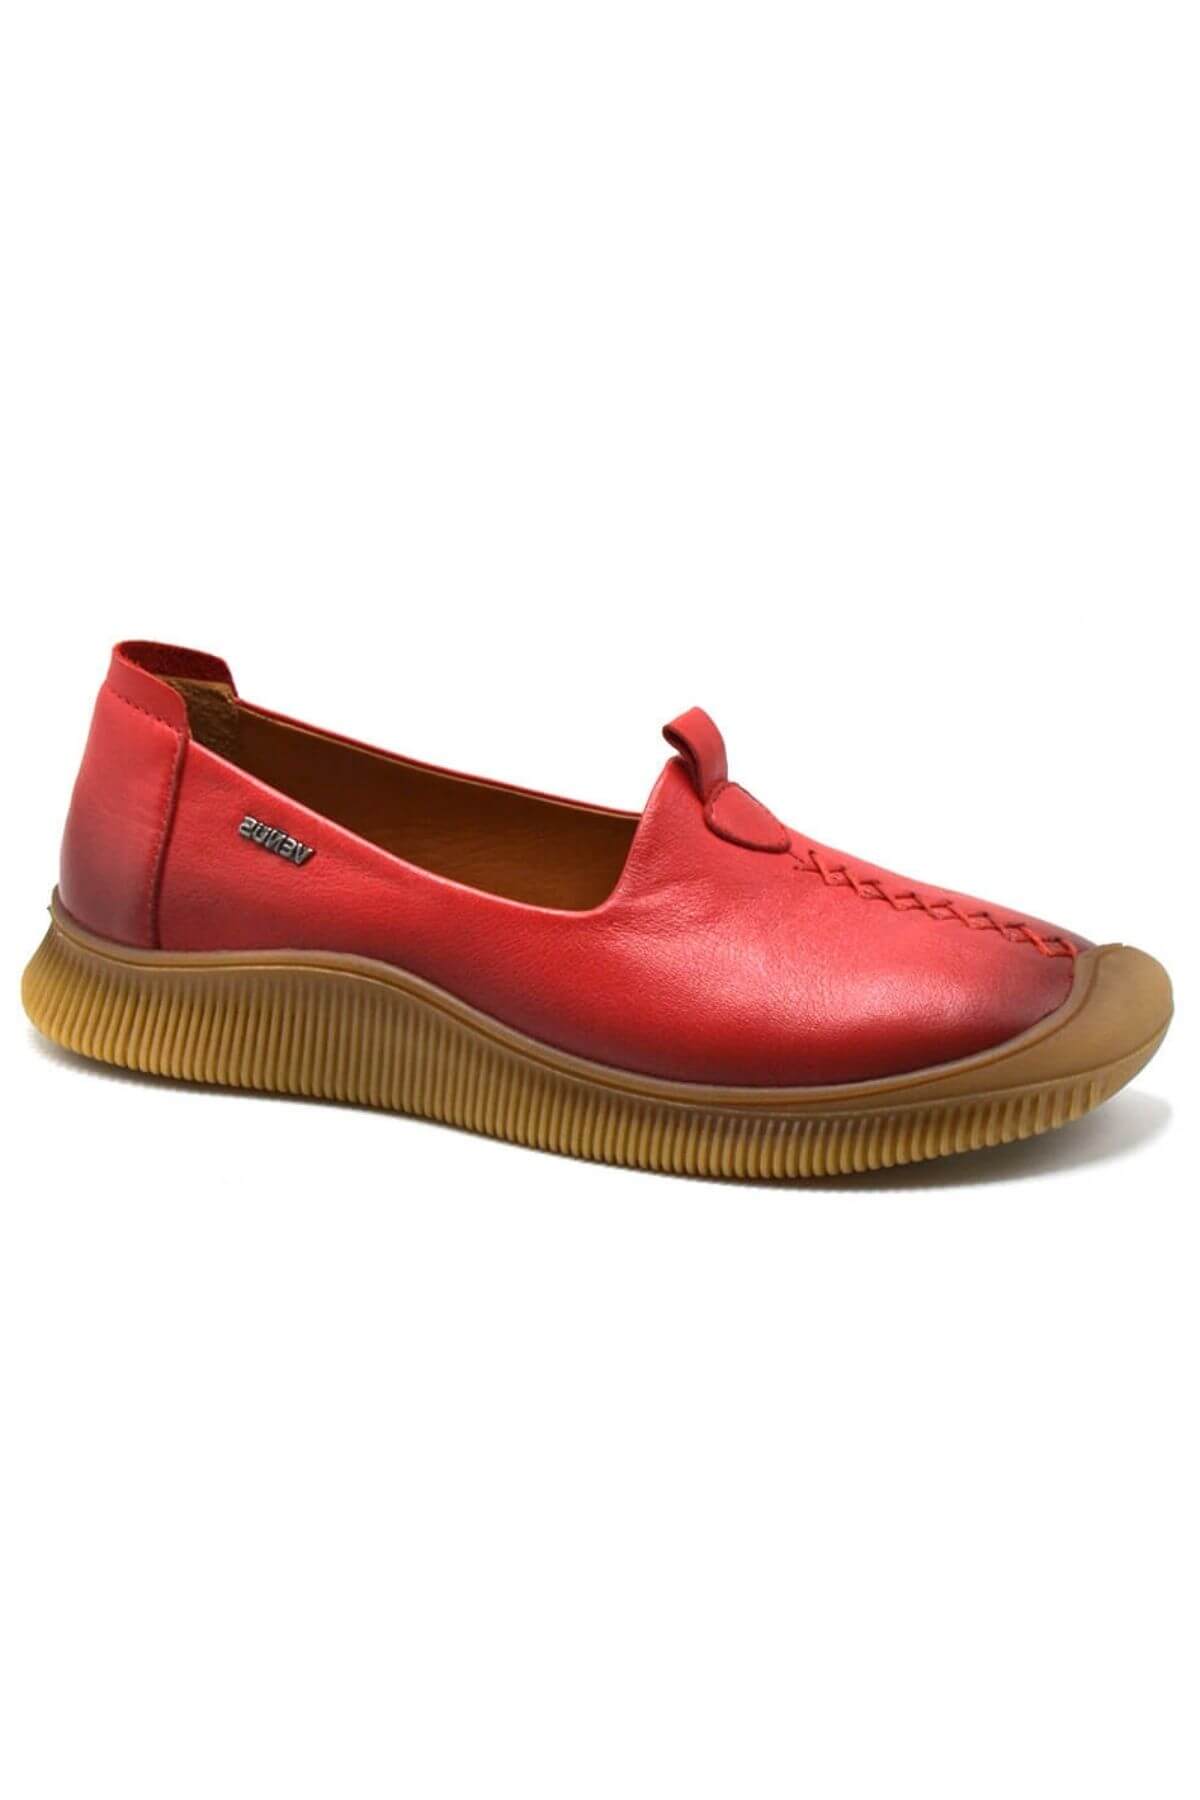 Kadın Comfort Deri Ayakkabı Kırmızı 2413503Y